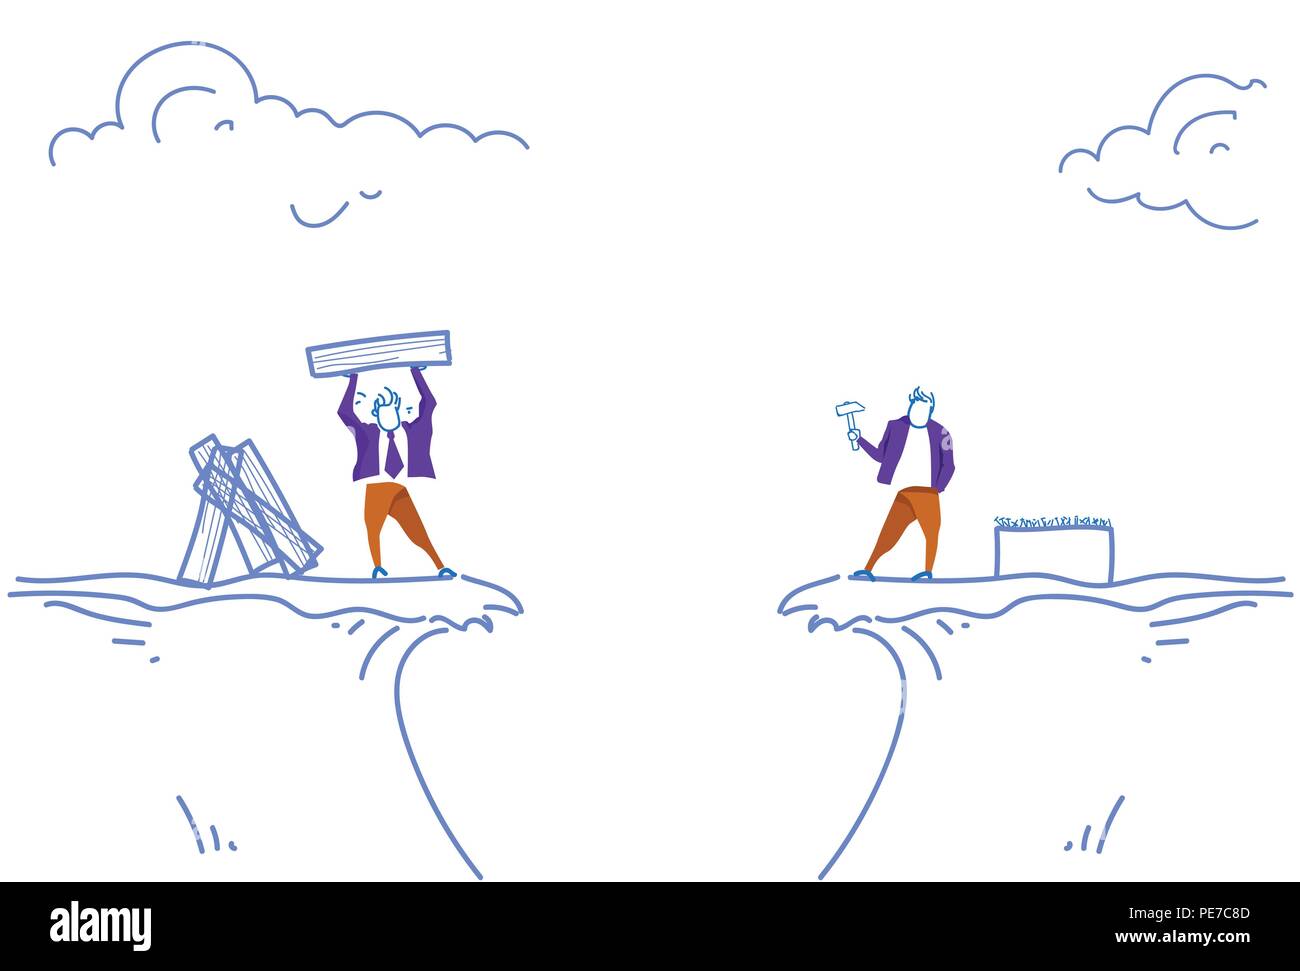 Deux hommes d'un marteau de boucher les ongles concept bâtiment conseil entre montagne abîme business problème solution doodle croquis horizontale Illustration de Vecteur